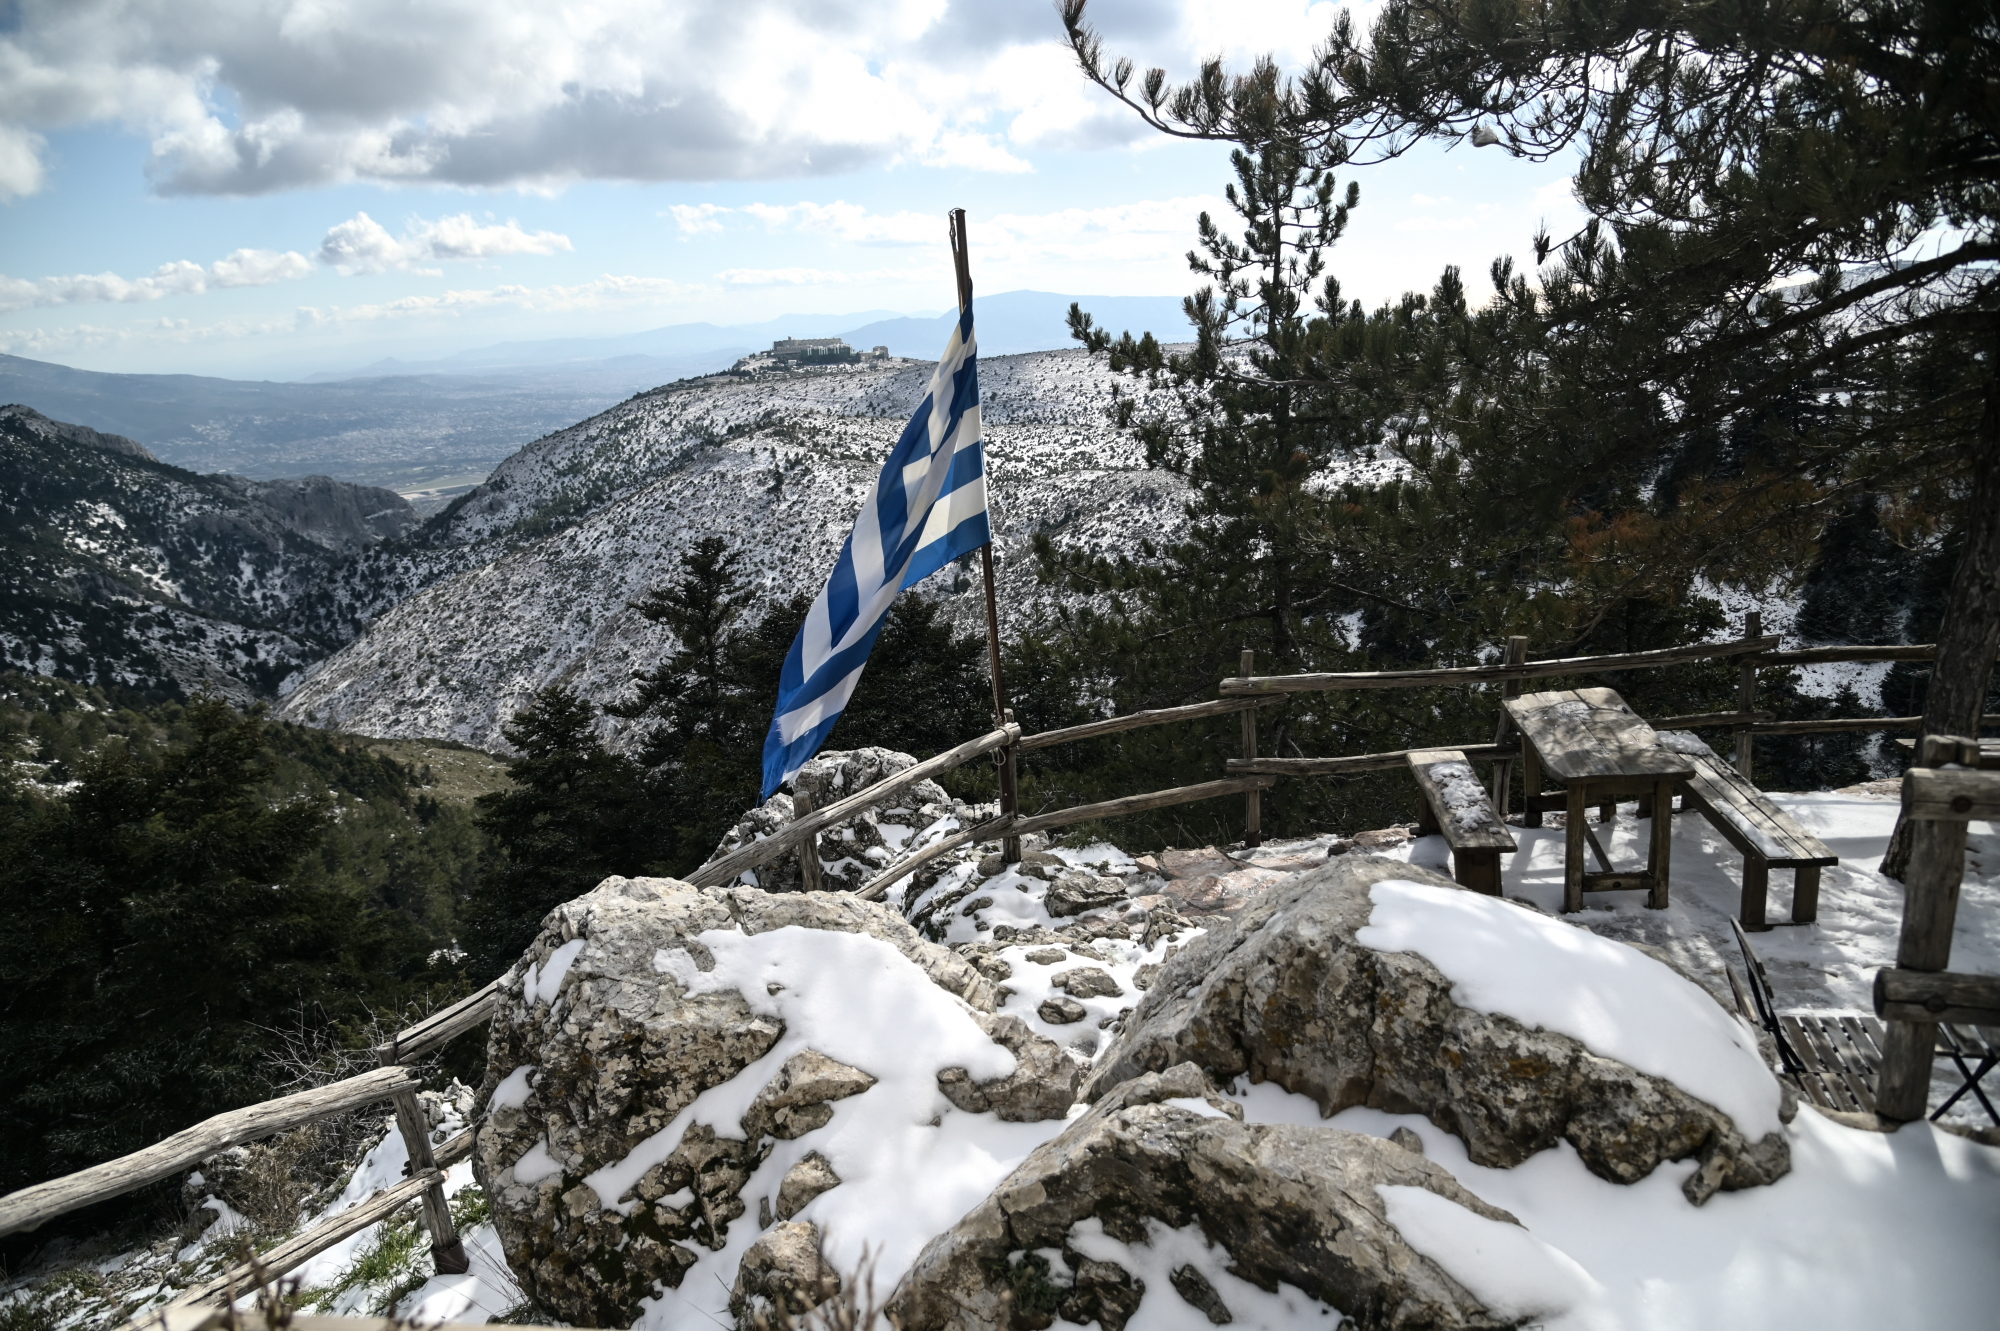 Κακοκαιρία «Μπάρμπαρα»: Δύσκολο τριήμερο με χιονοκαταιγίδες και πολικές θερμοκρασίες – Ποιες περιοχές της Αθήνας θα ντυθούν στα λευκά